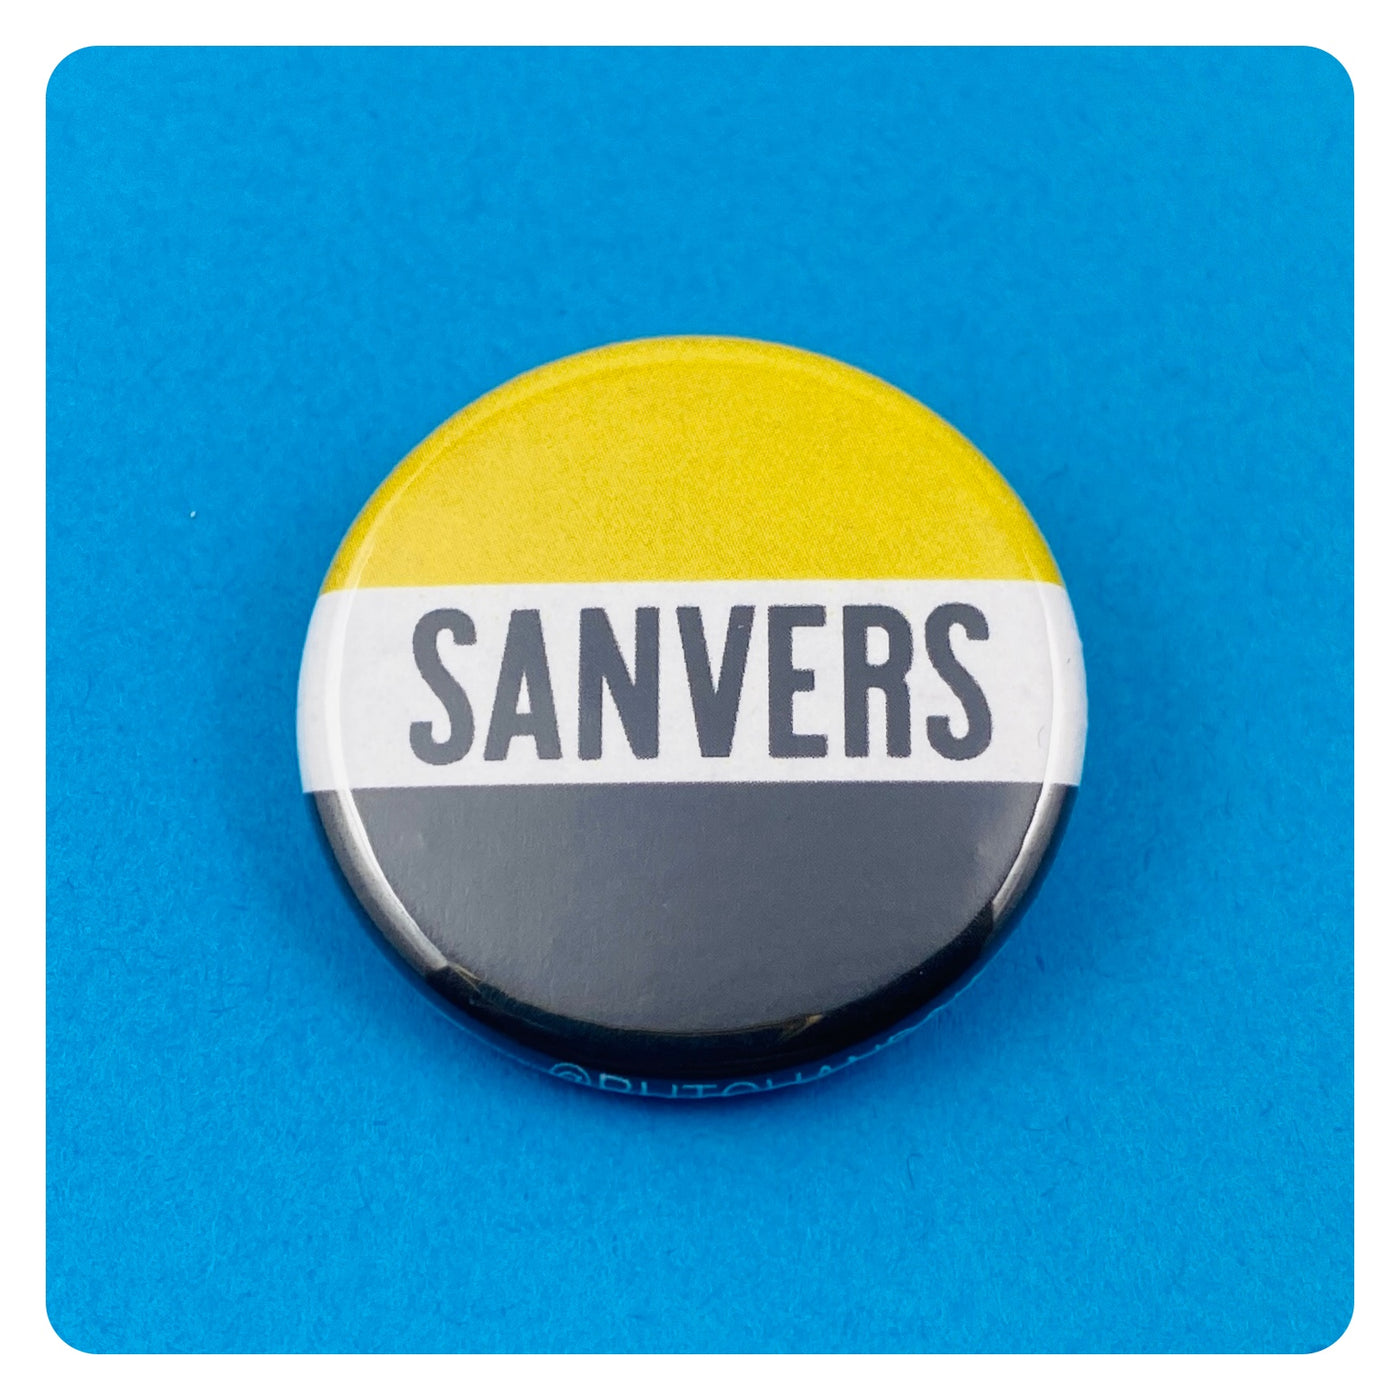 Sanvers Ship Button